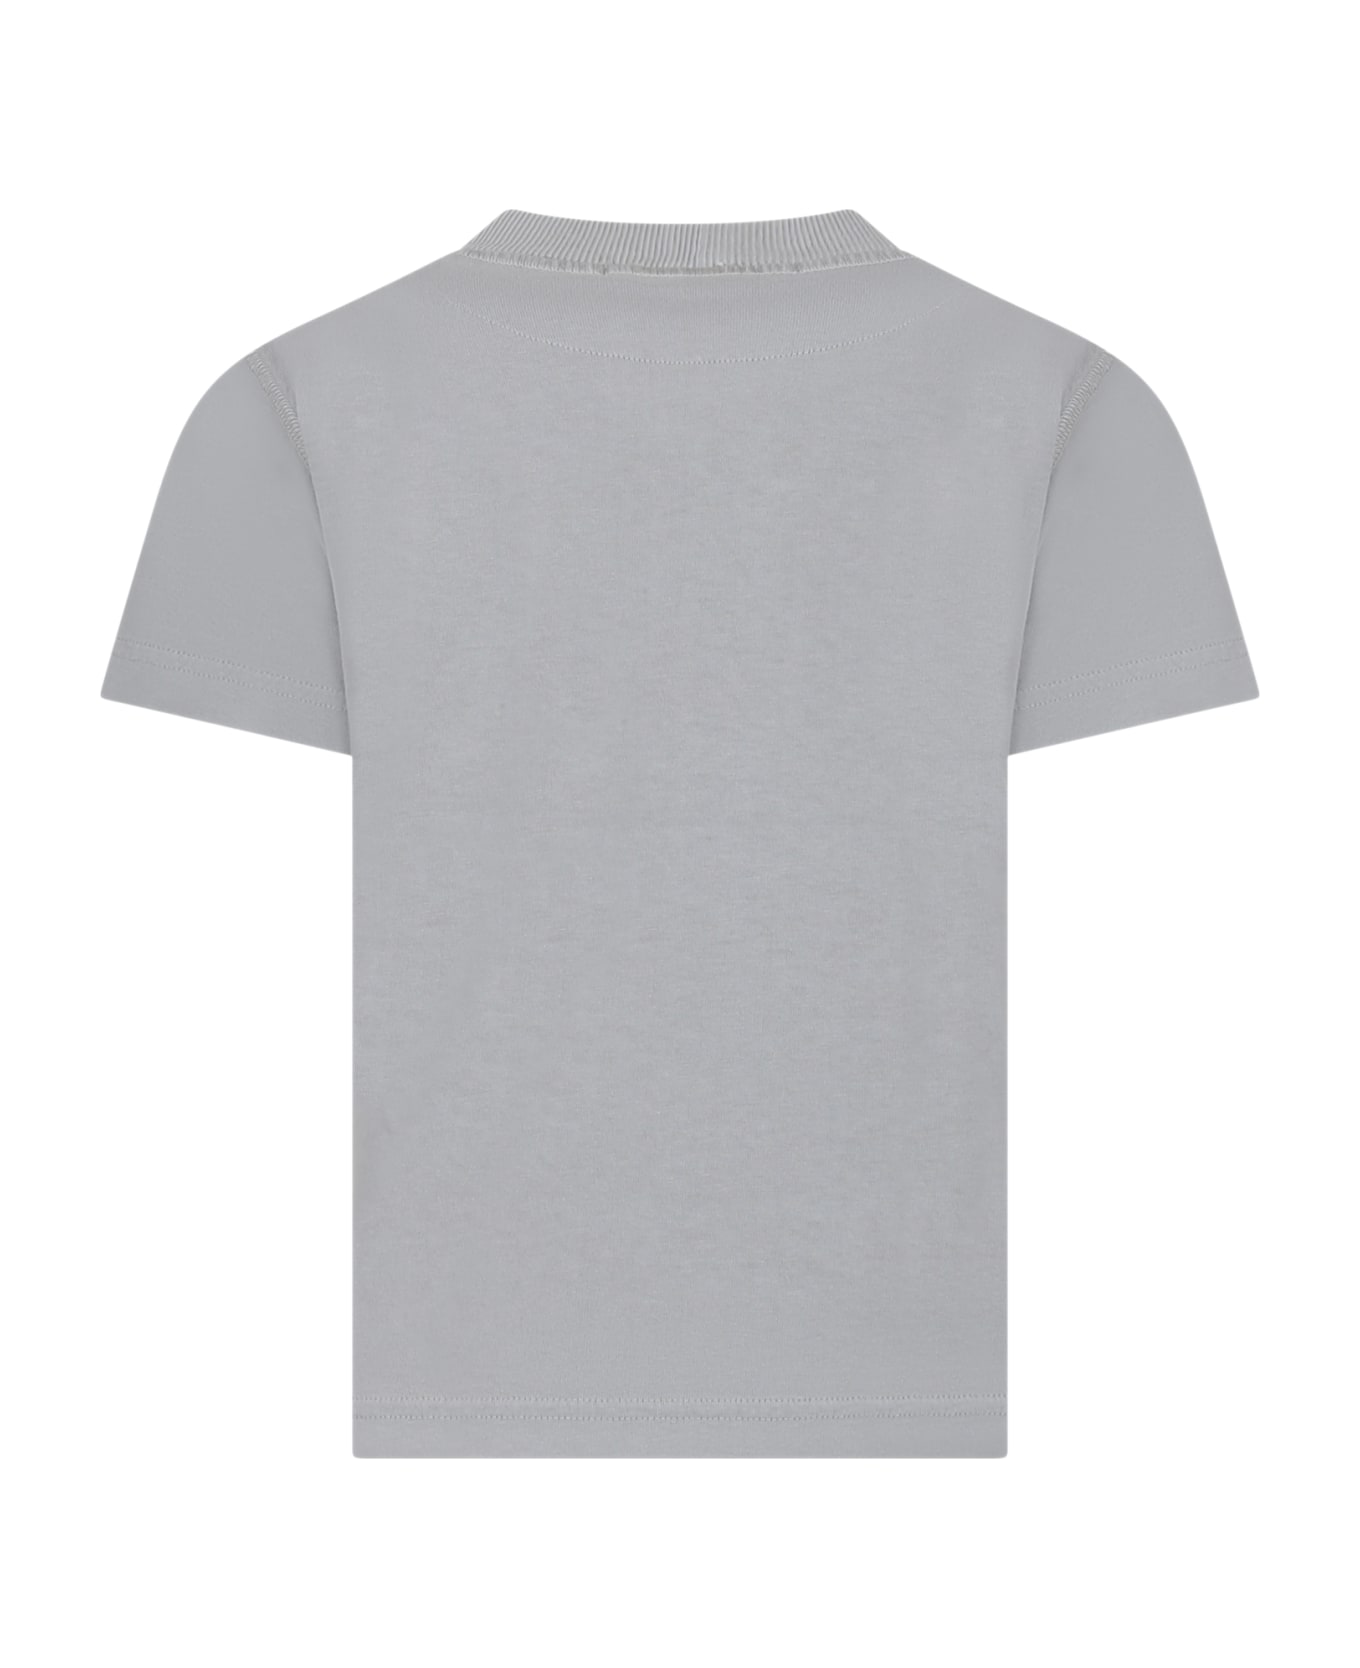 Stone Island Junior Grey T-shirt For Boy With Logo - Grigio